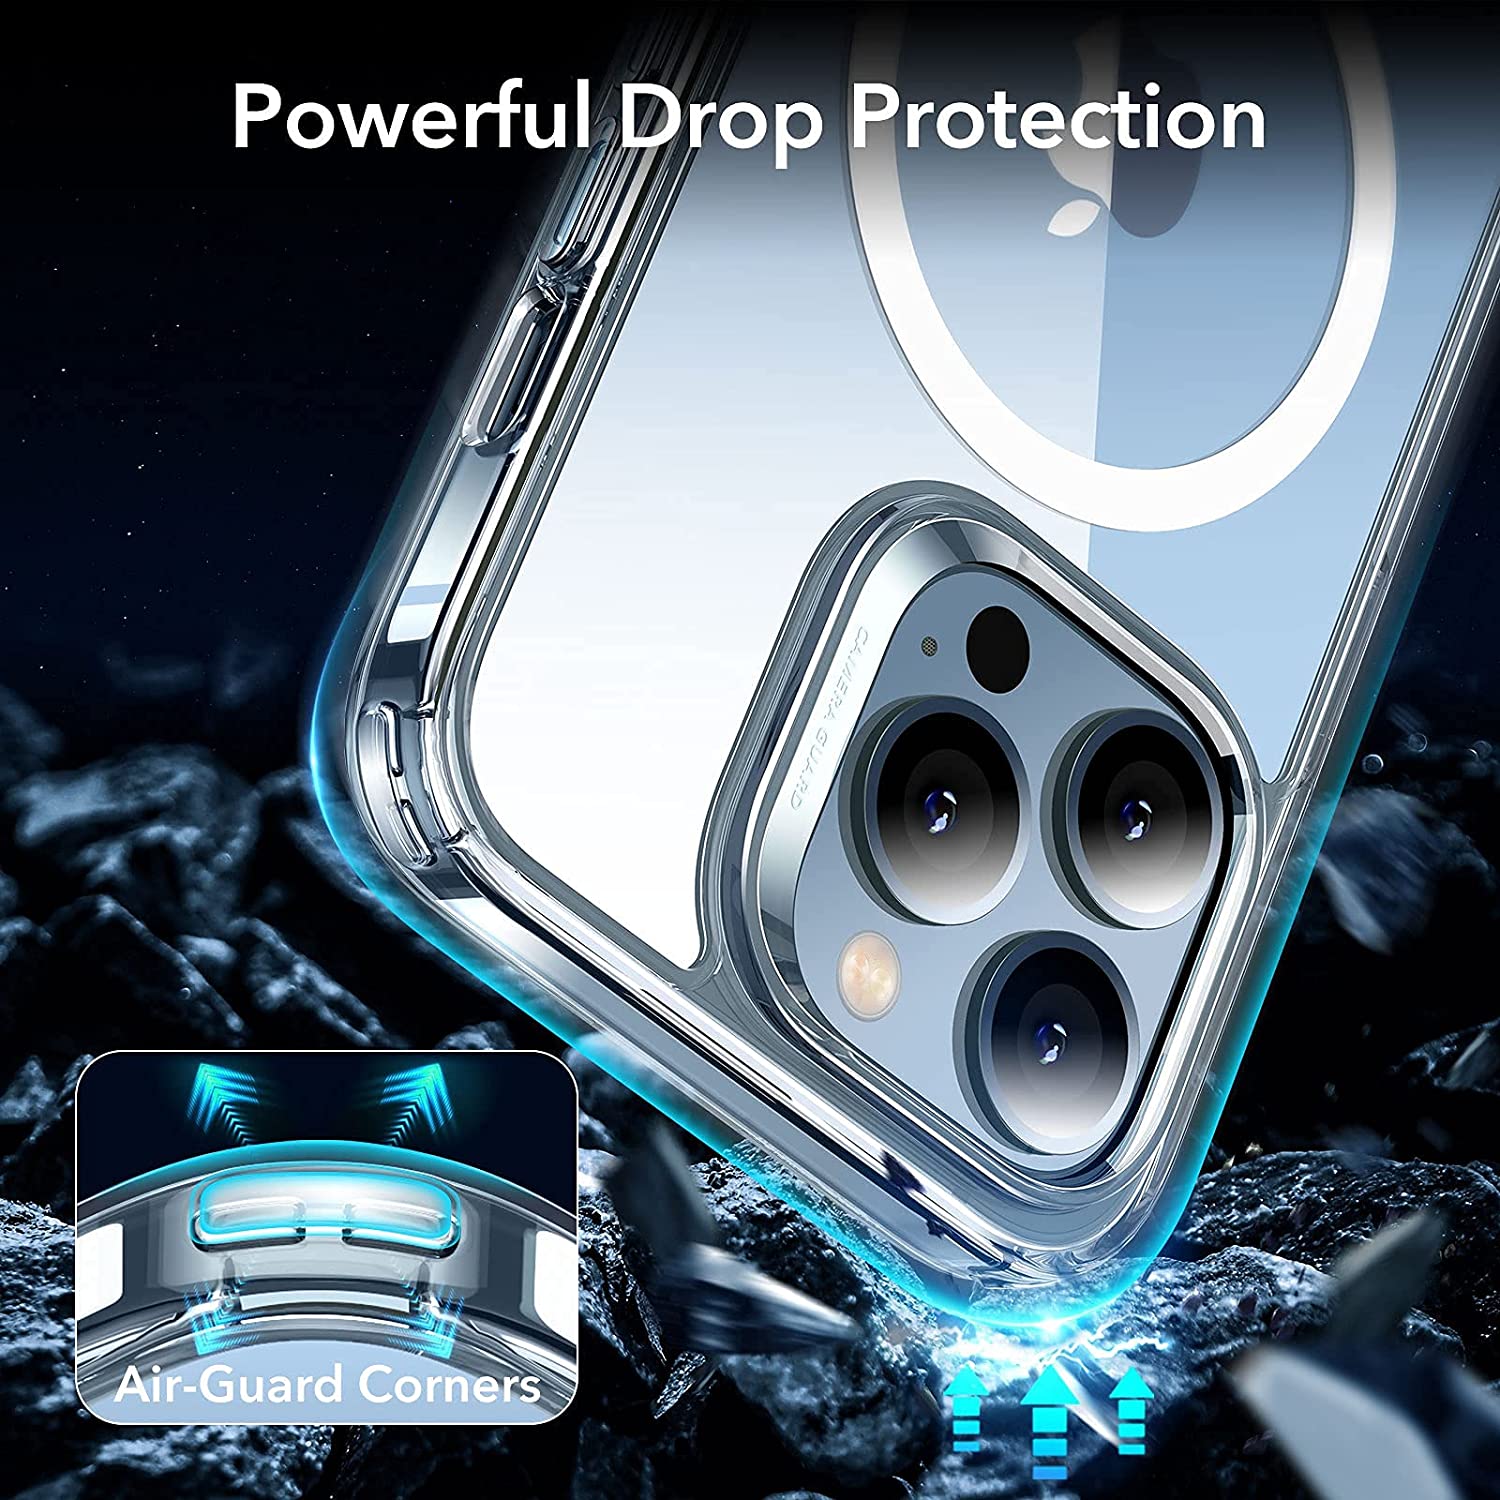 Ốp Lưng Cho iPhone 13 / 13 Pro / 13 Pro Max ESR Classic Hybrid Case with HaloLock MagSafe - Hàng Nhập Khẩu